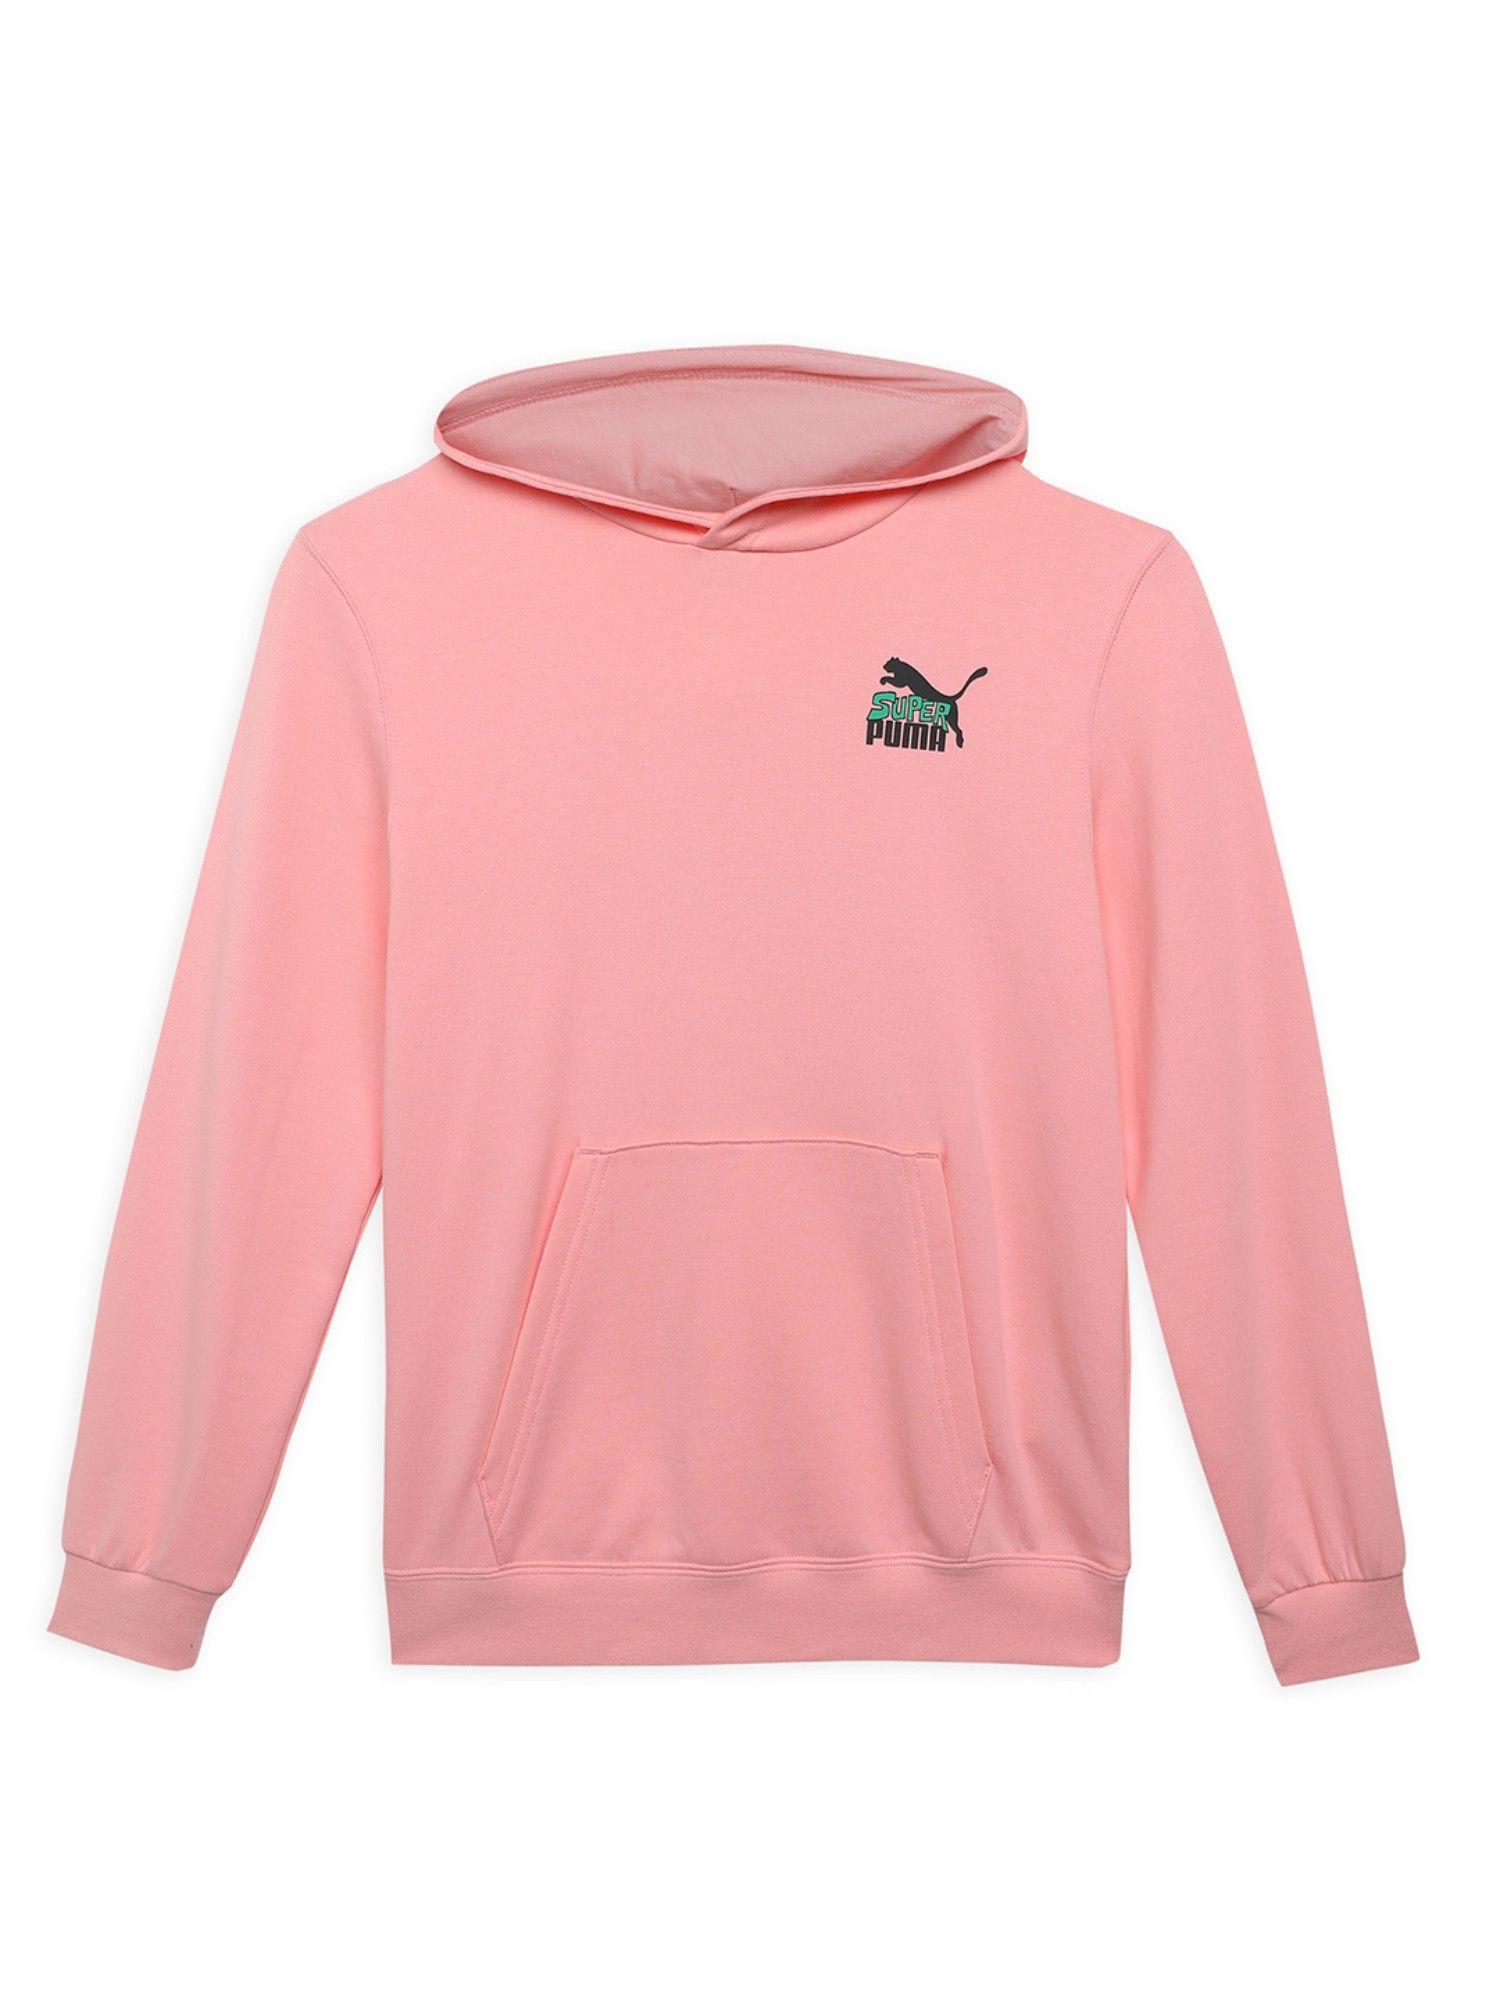 classics-super-boys-pink-hoodies